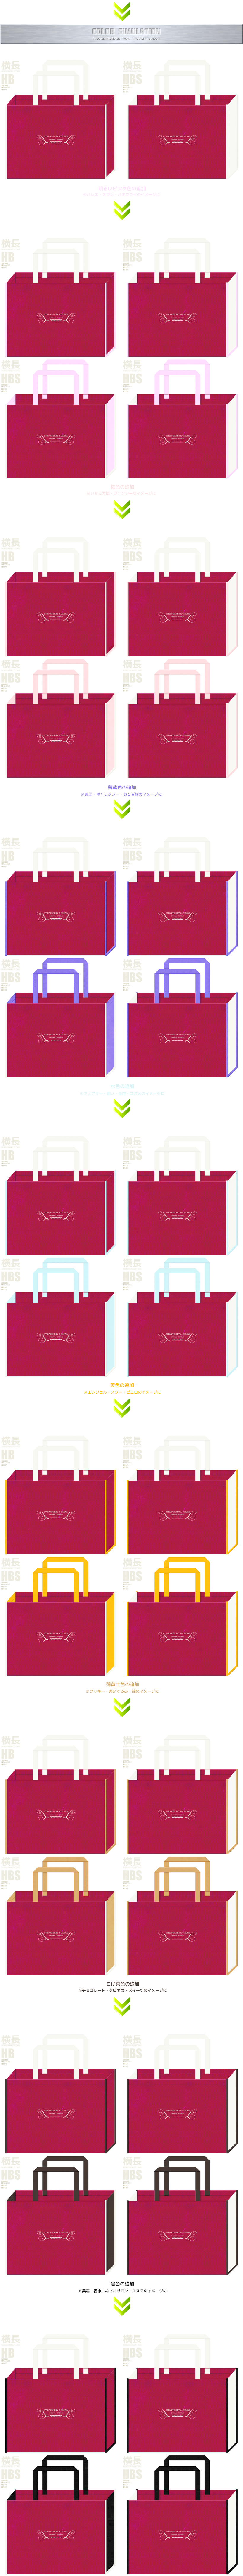 ガーリーデザインの不織布バッグ：濃ピンク色とオフホワイトの組み合わせ